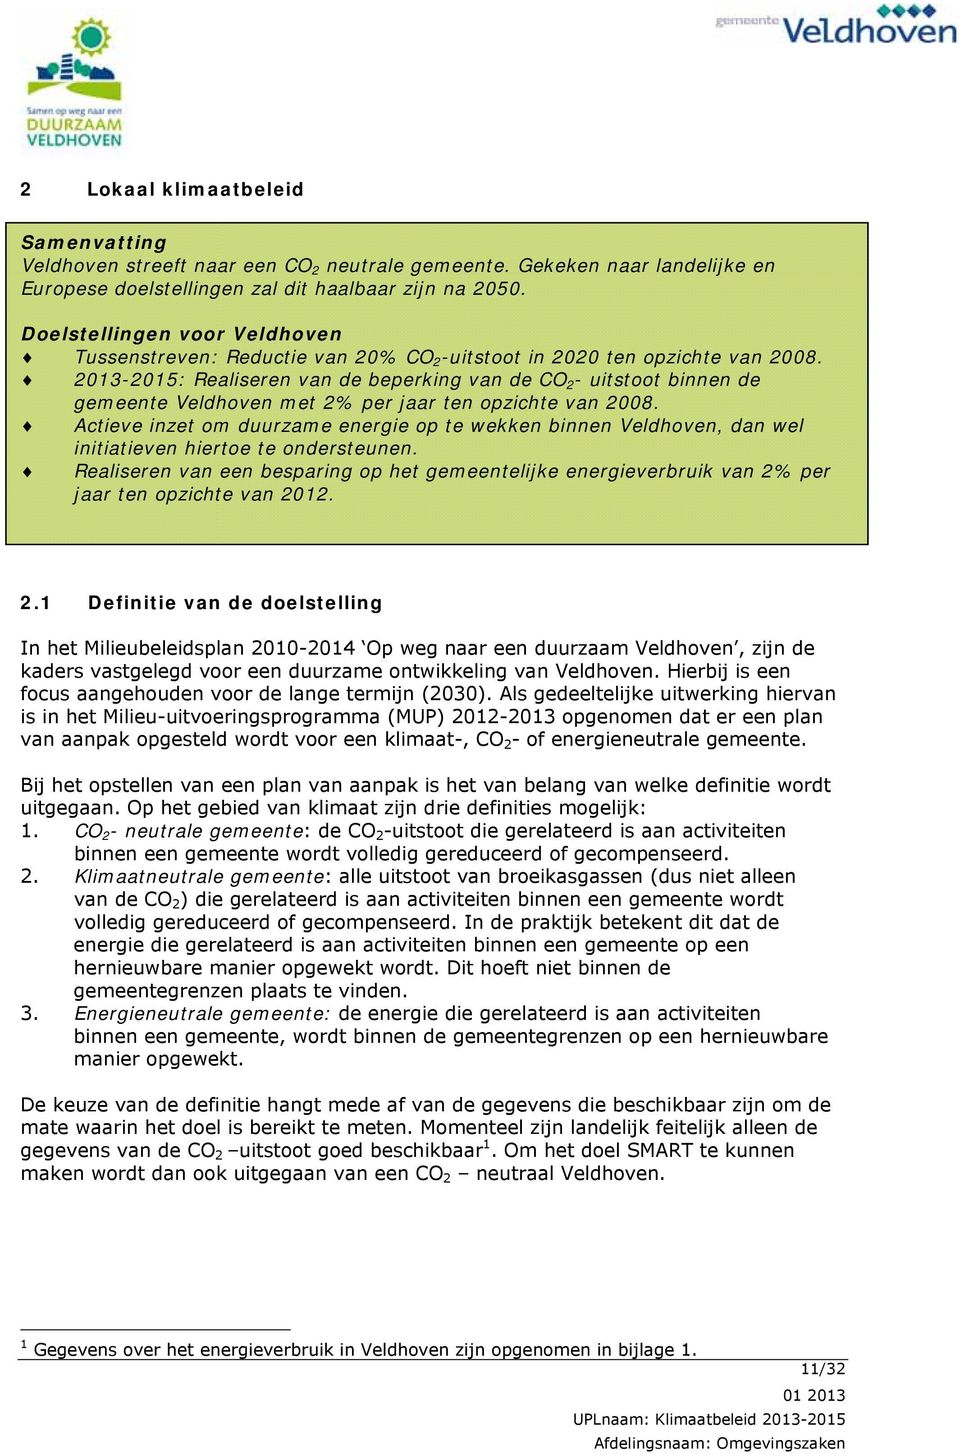 2013-2015: Realiseren van de beperking van de CO 2 - uitstoot binnen de gemeente Veldhoven met 2% per jaar ten opzichte van 2008.